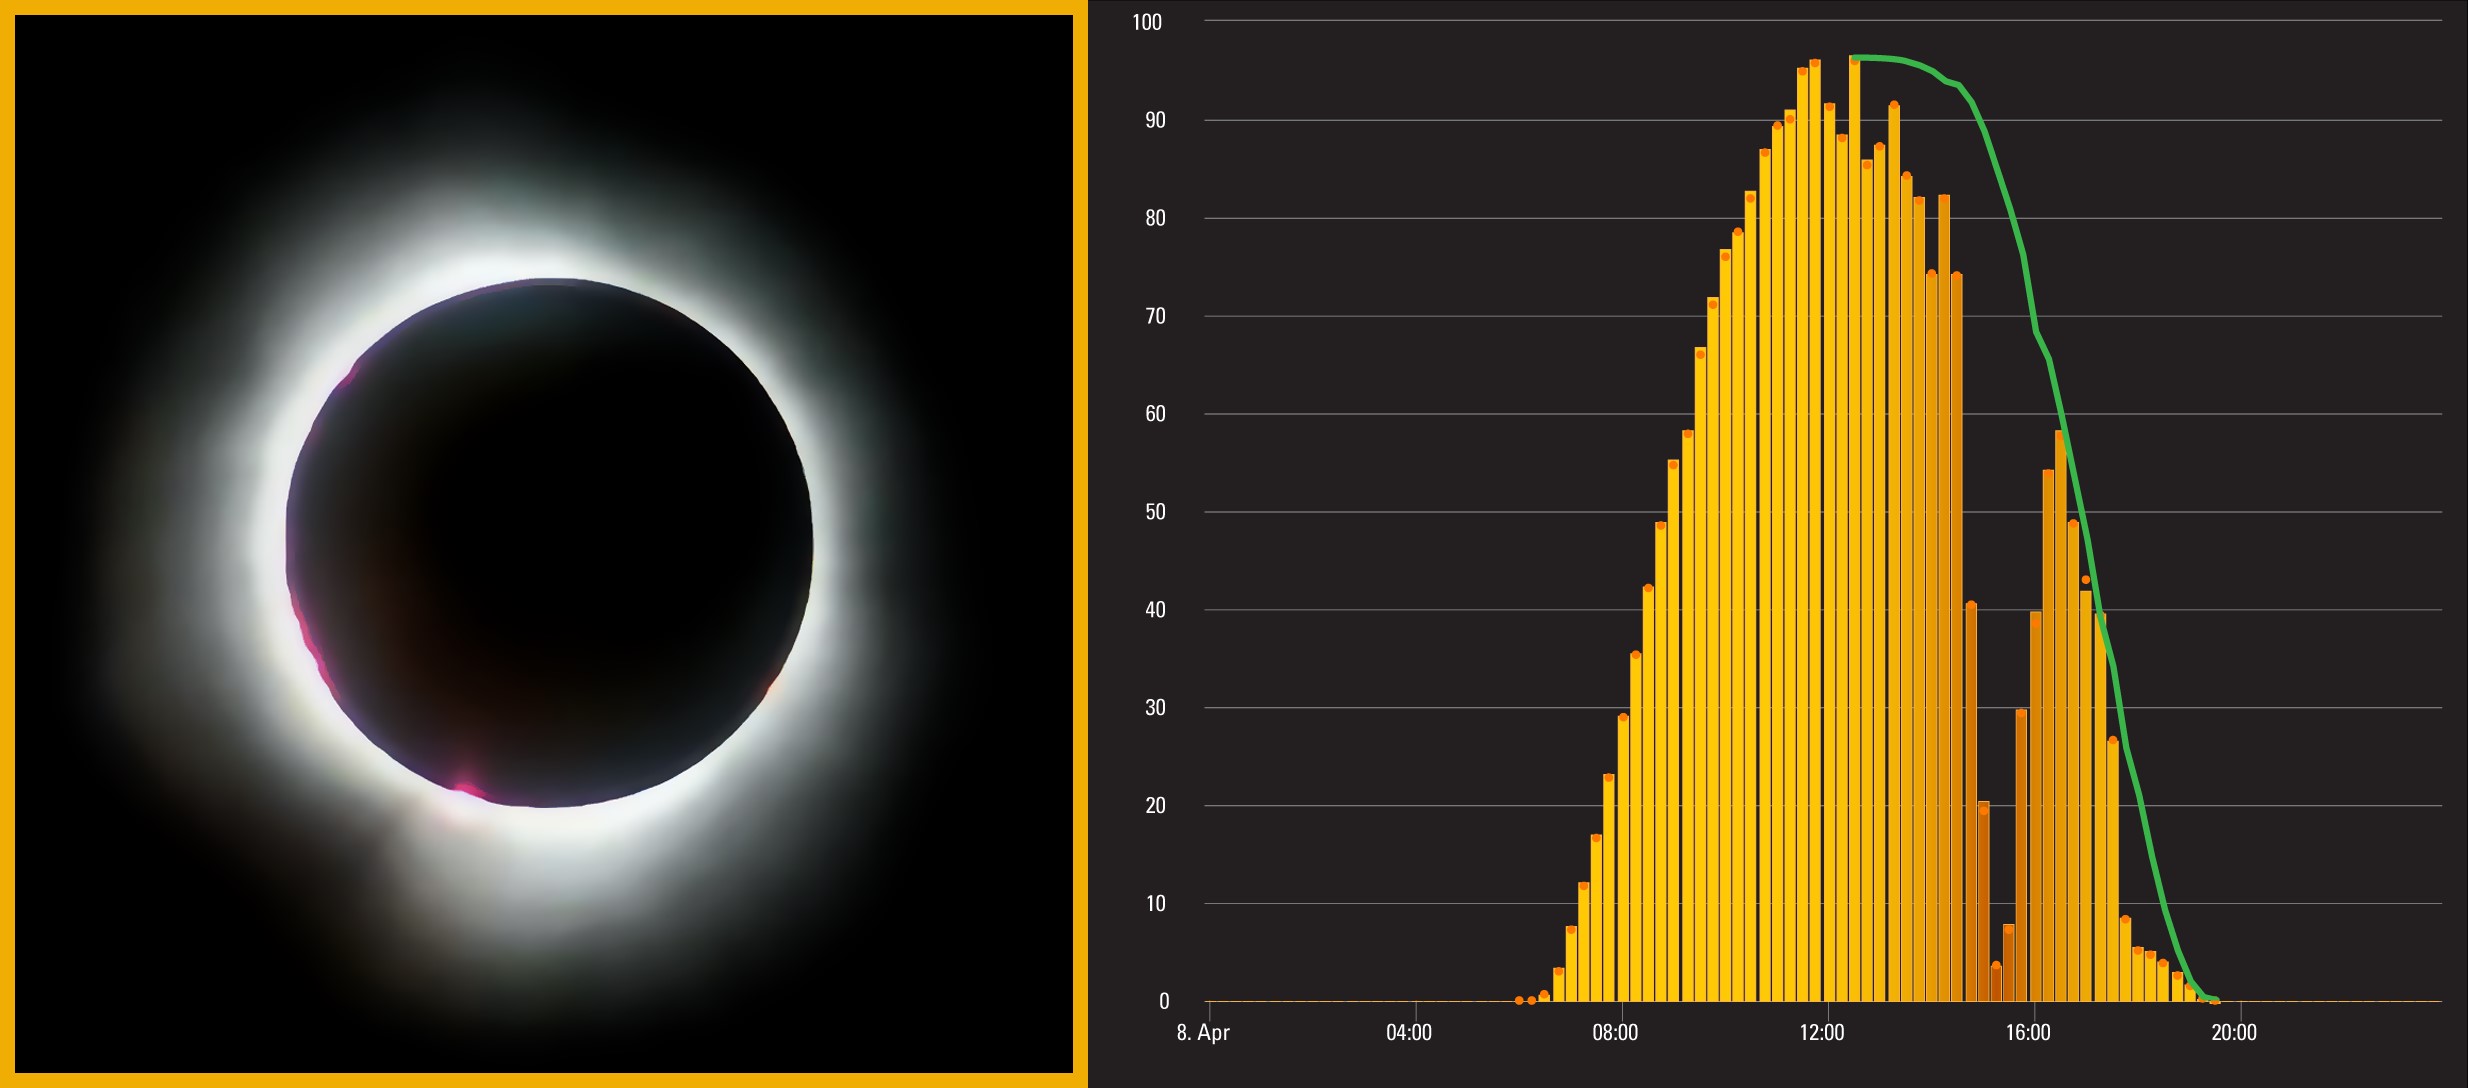 Eclipse solar panel output eclipse